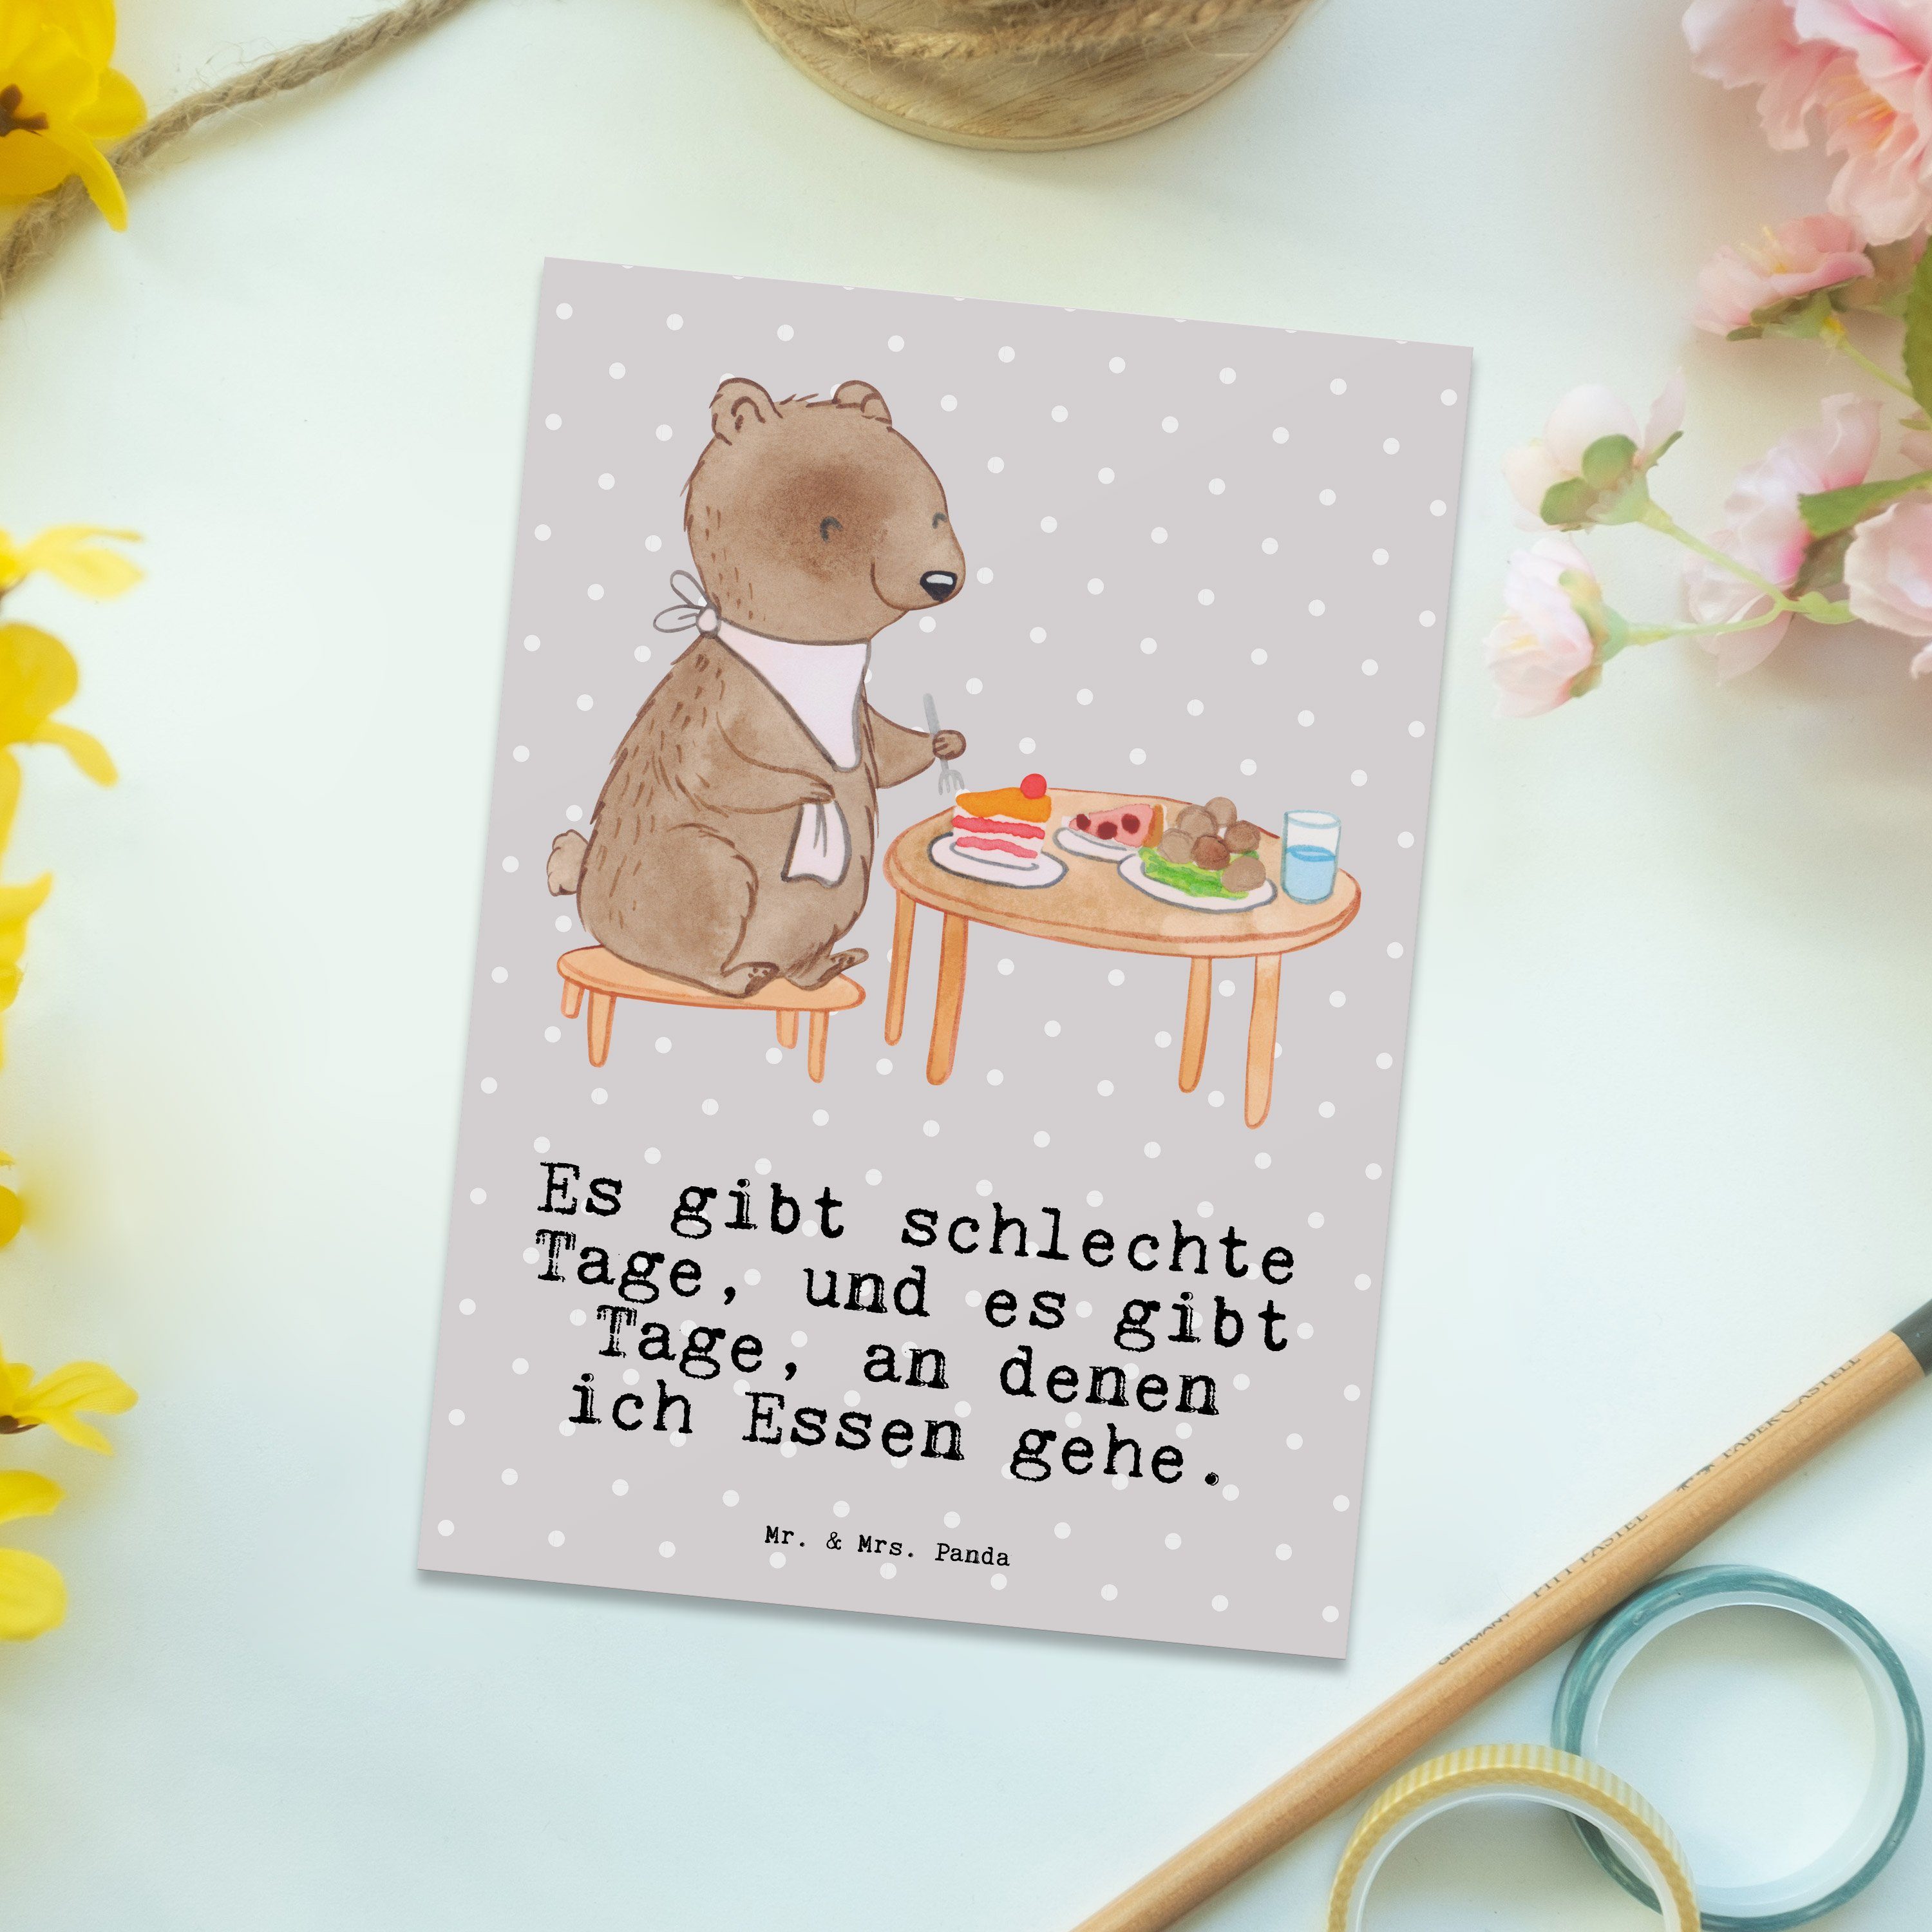 Essen Panda Pastell Geschenk, gehen Postkarte - Grau - & Geburtstagskarte, Mrs. Mr. Res Tage Bär